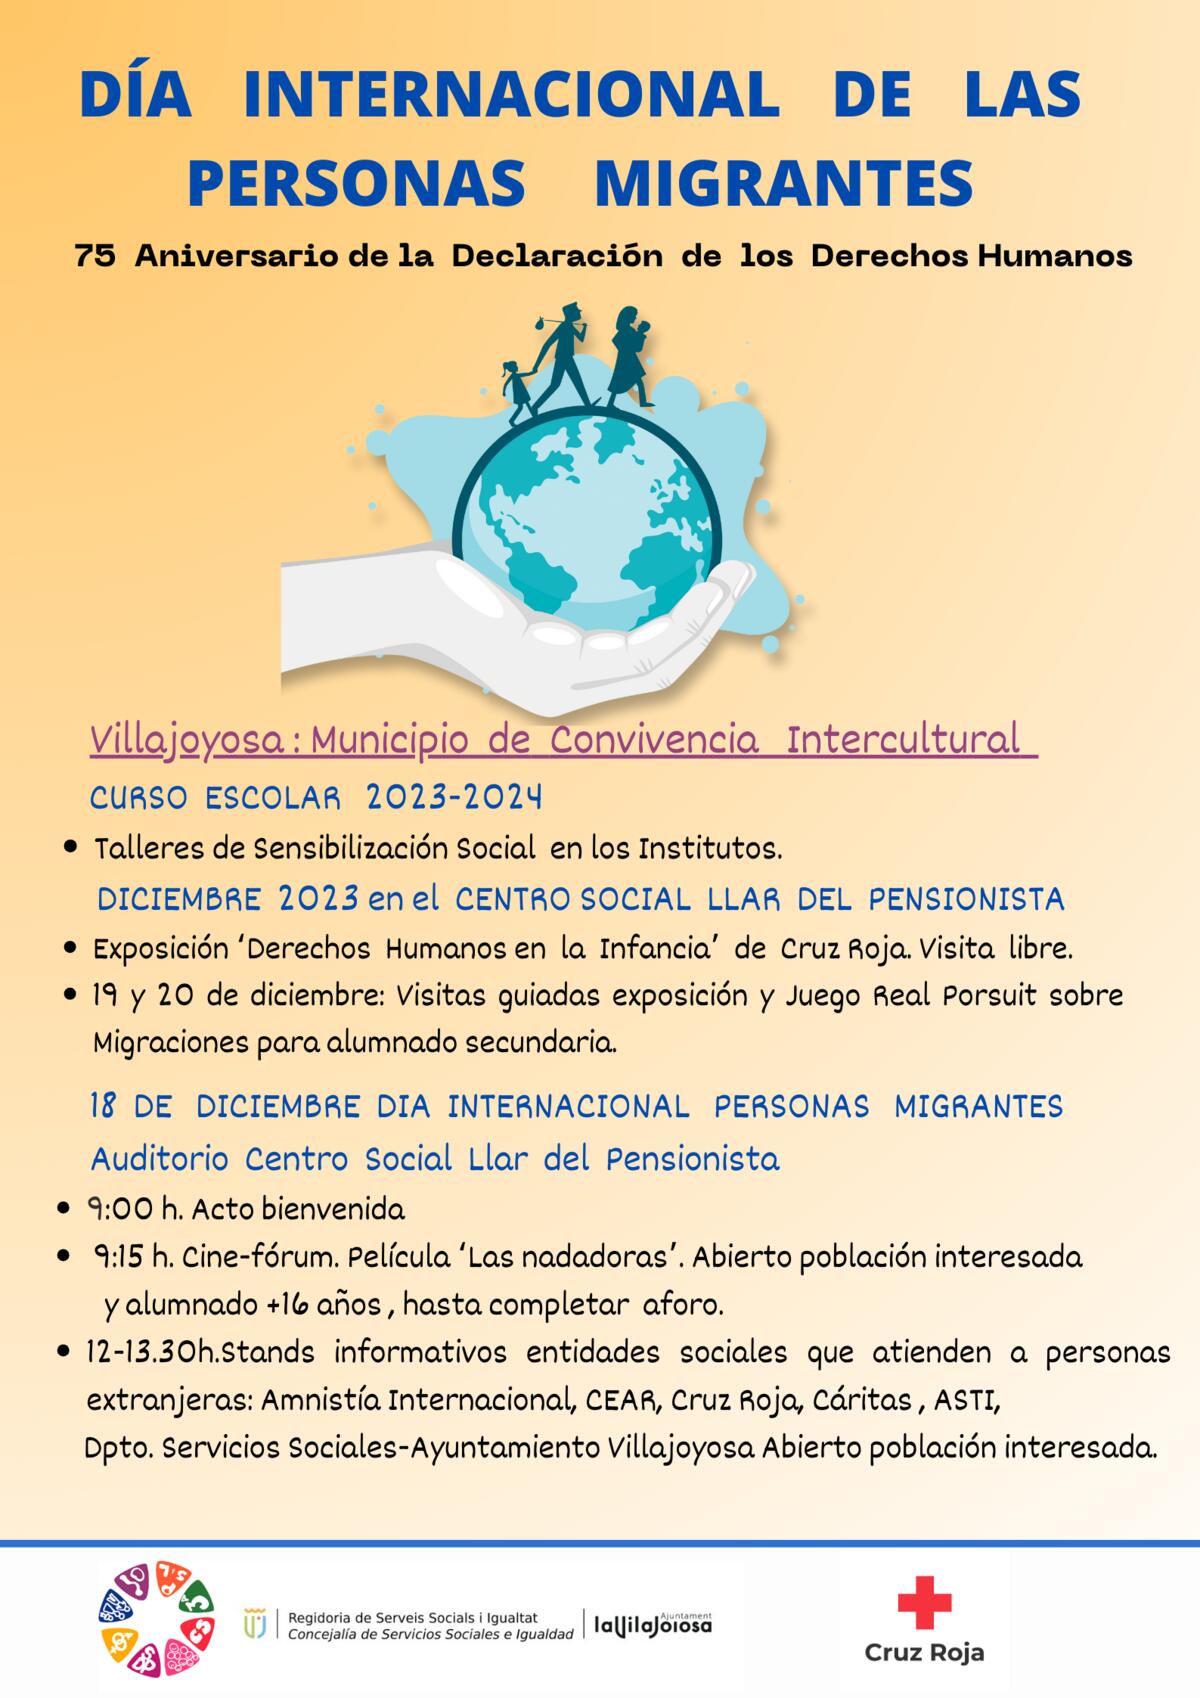 Villajoyosa celebra el Día Internacional de las Personas Migrantes con una exposición de fotos y stands informativos de las entidades sociales que atienden a este colectivo